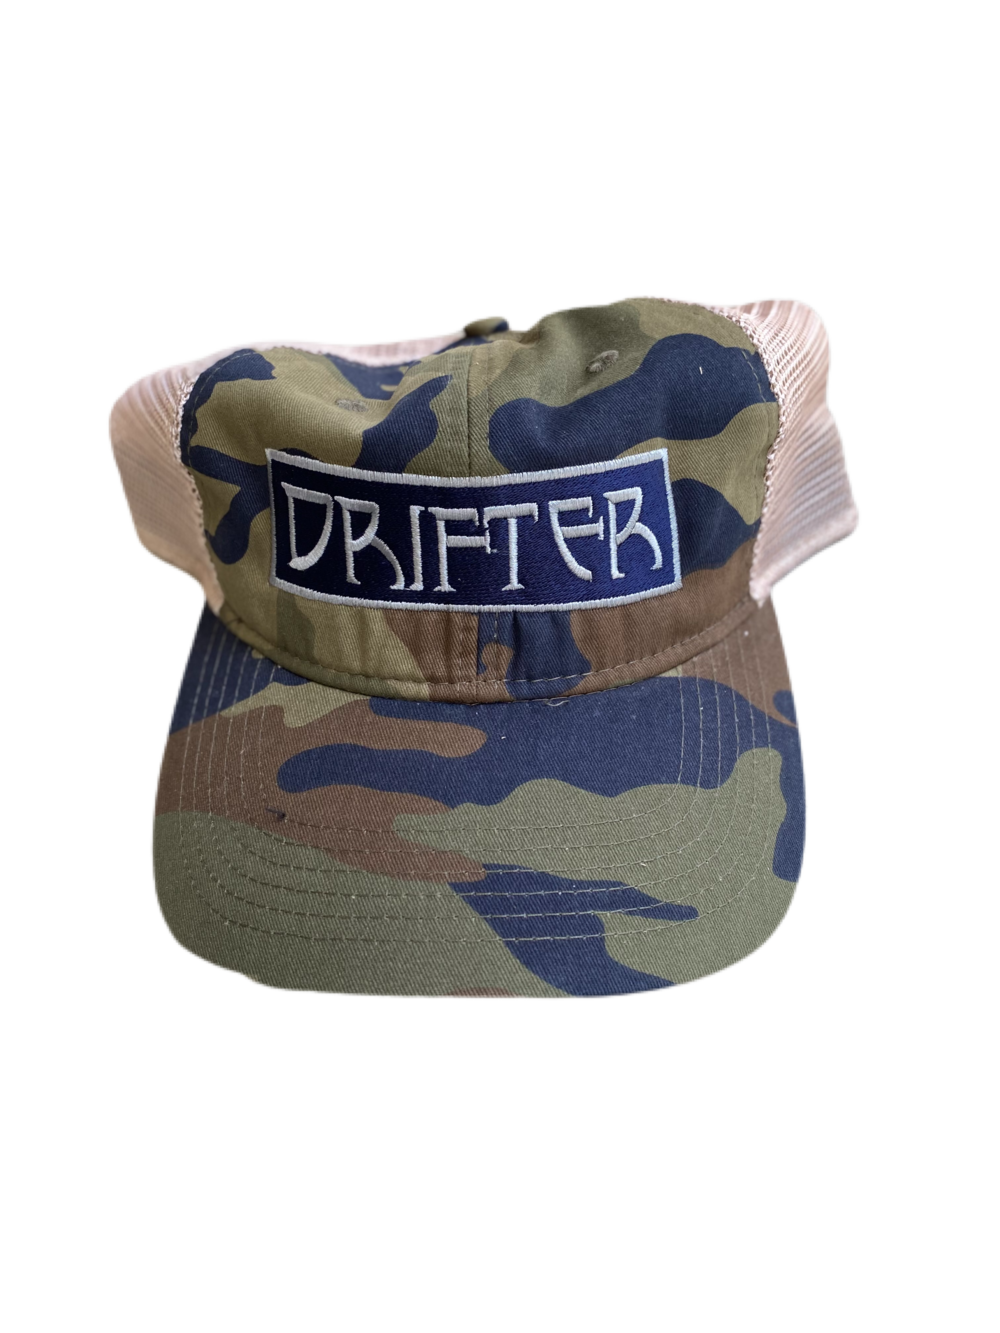 Drifter Hats — Drifter Merch